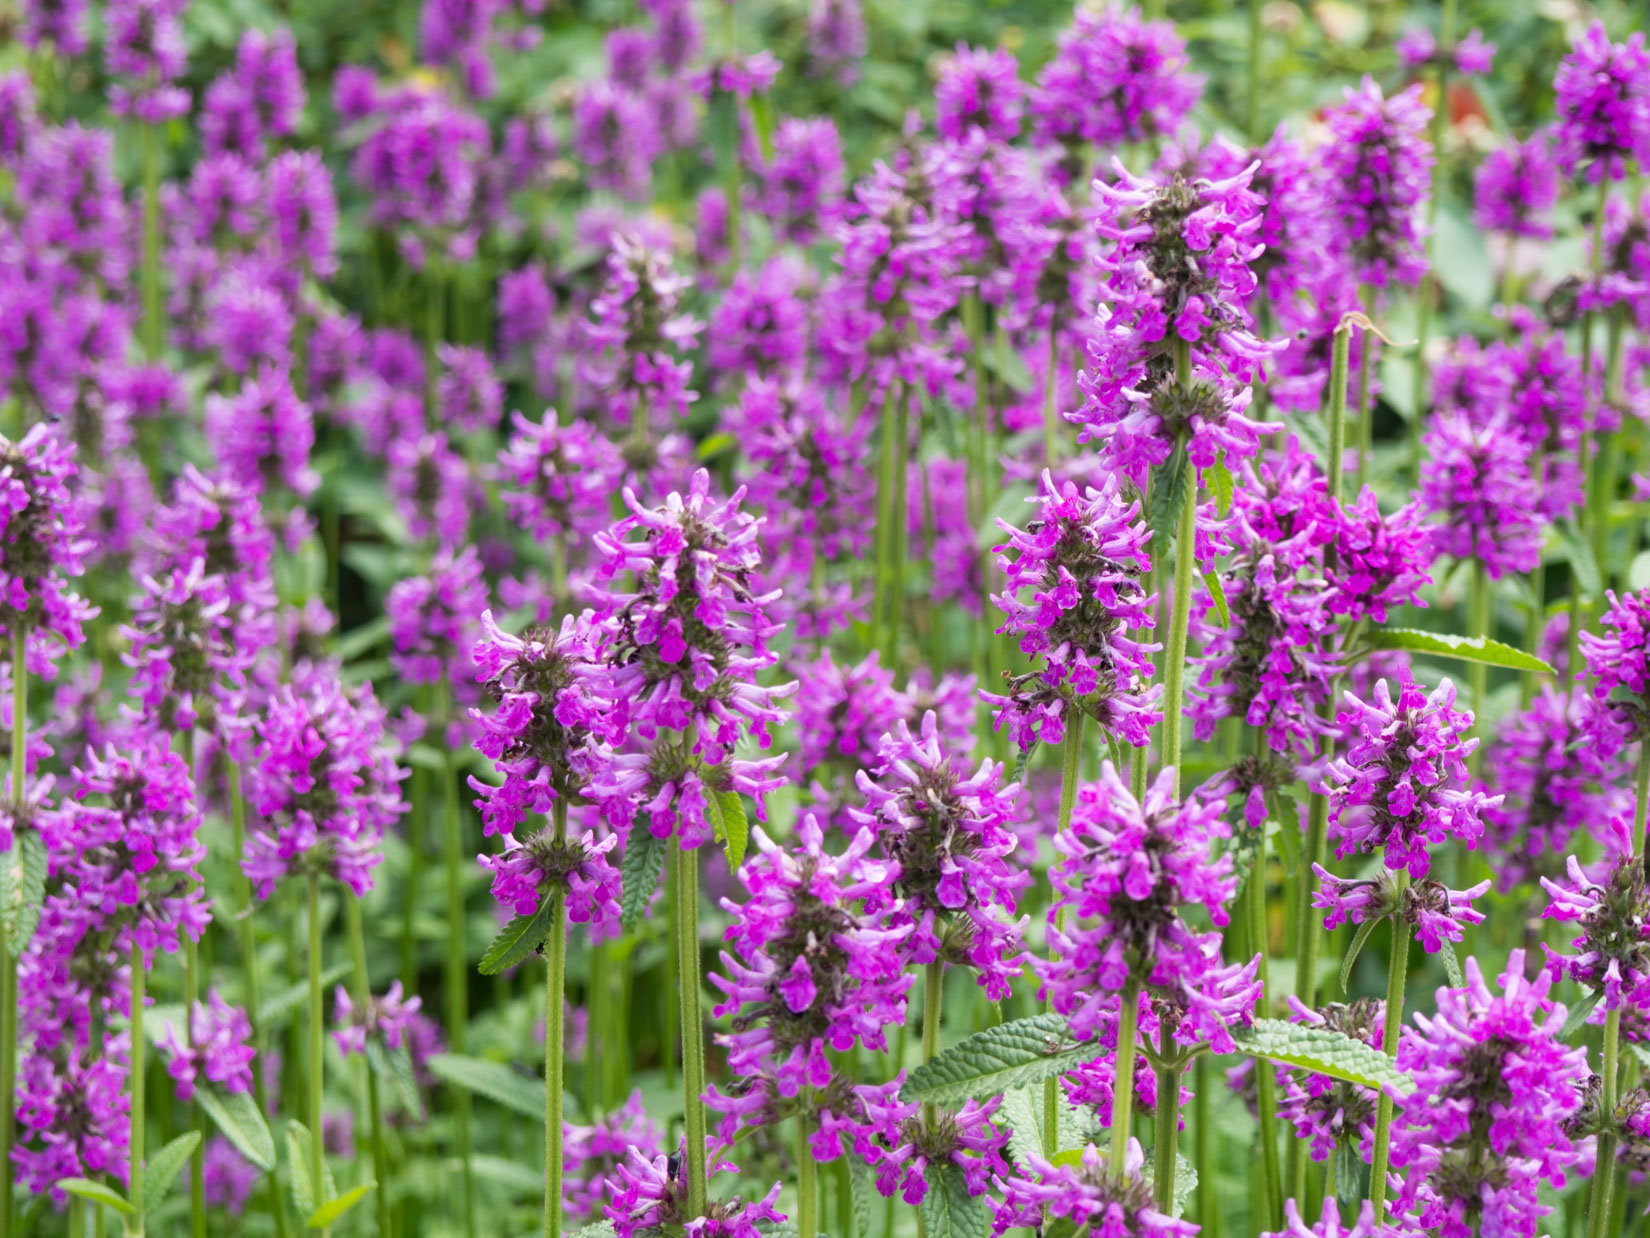 Purple Flowers in Garden